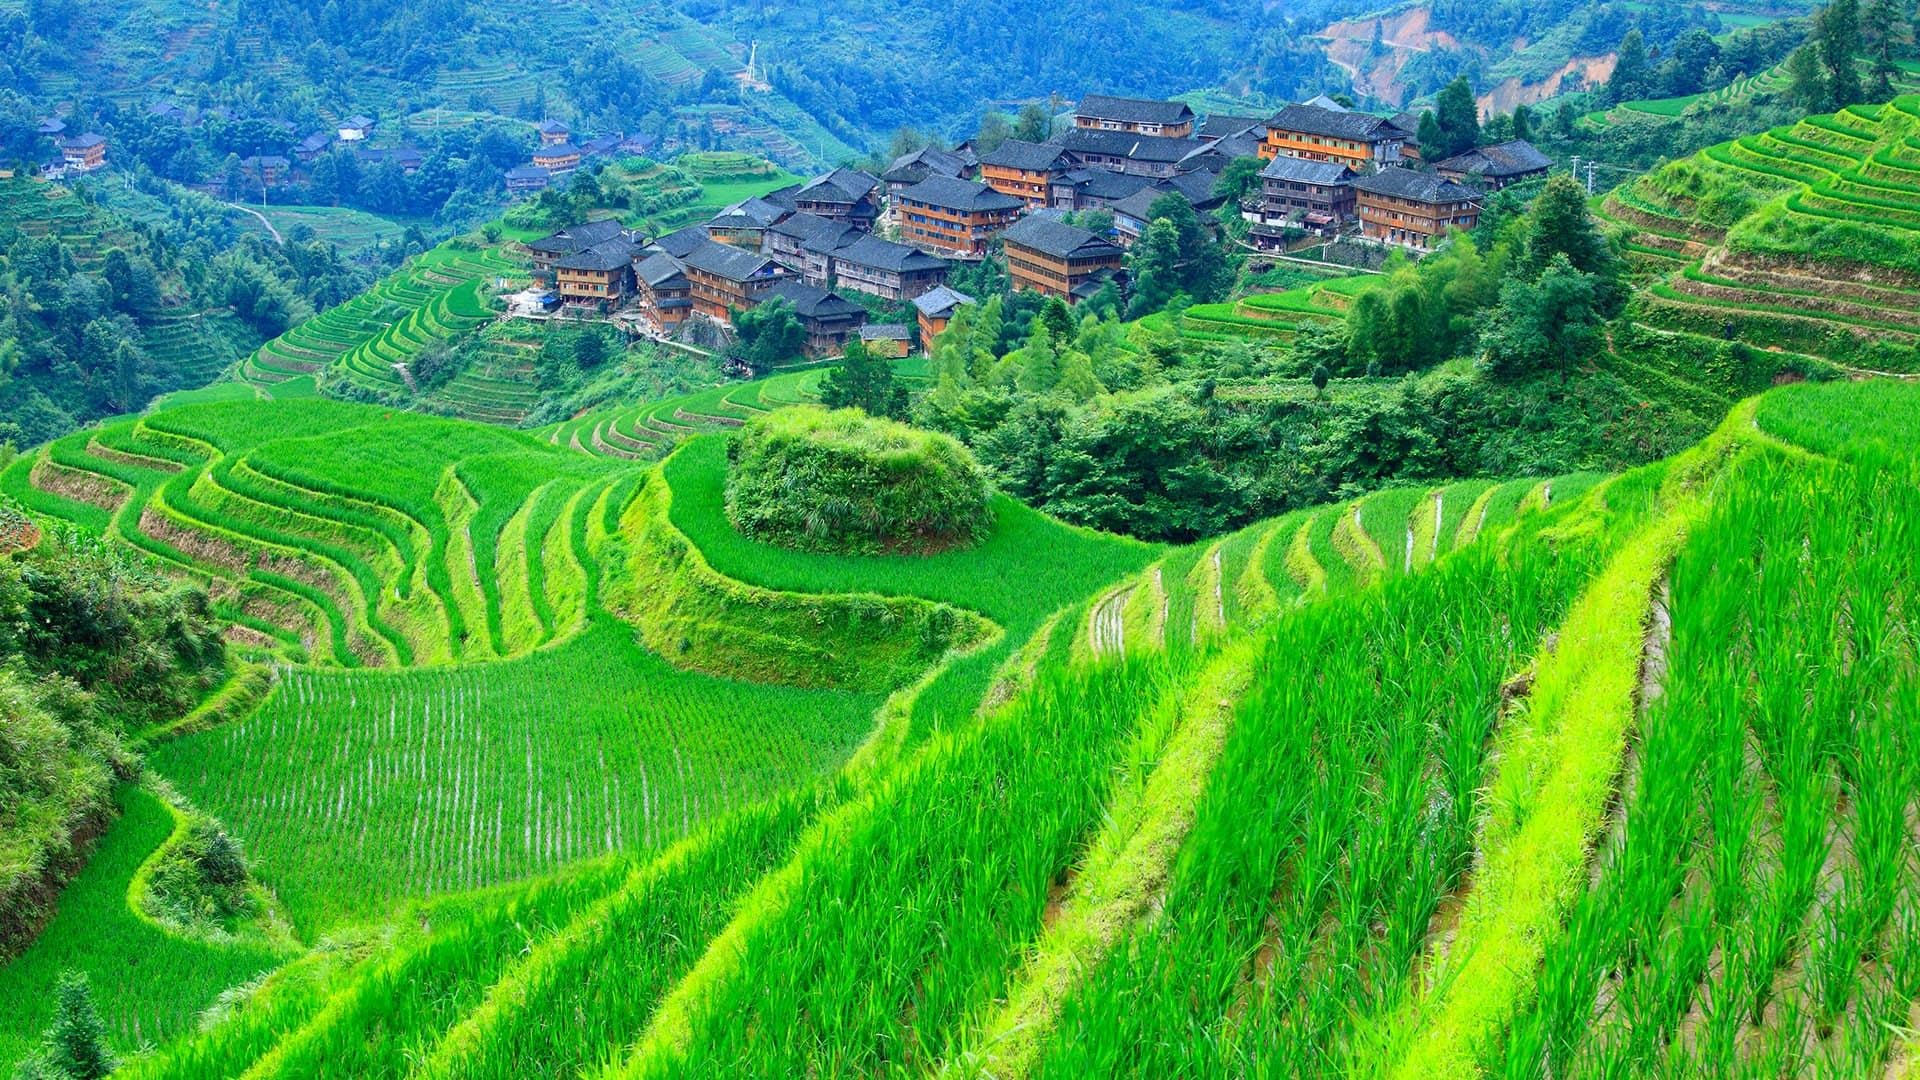 The Terraced Fields of Longsheng, Guangxi